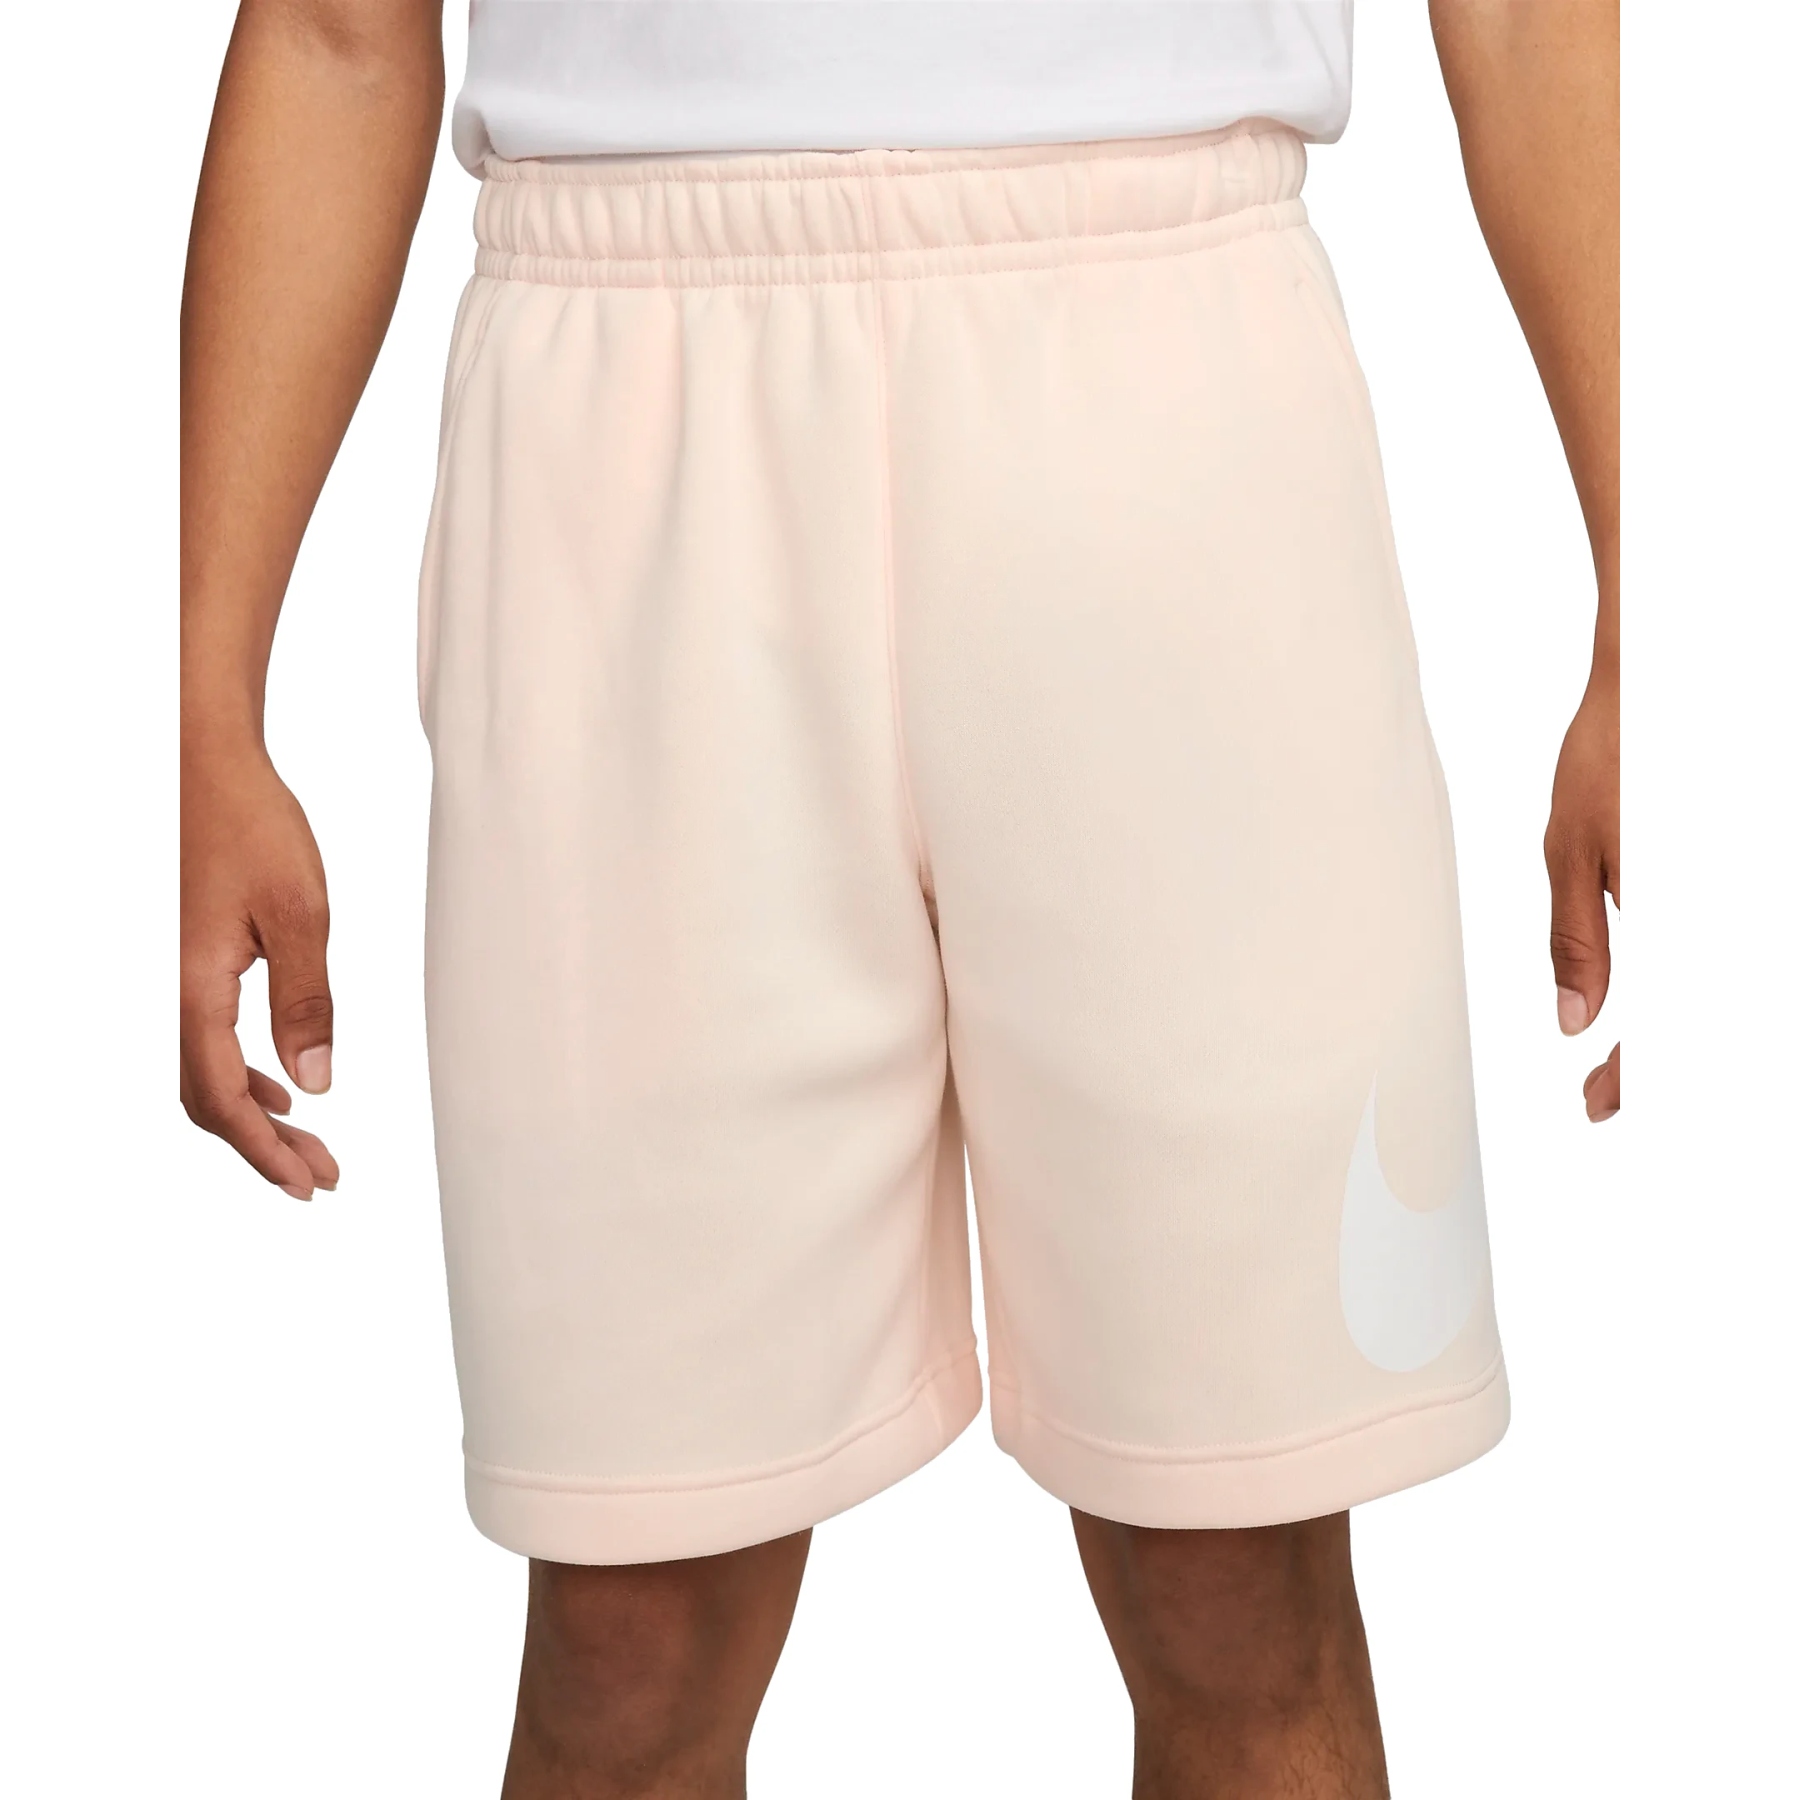 Bild von Nike Sportswear Club Graphic Shorts Herren - guava ice/white/white BV2721-838